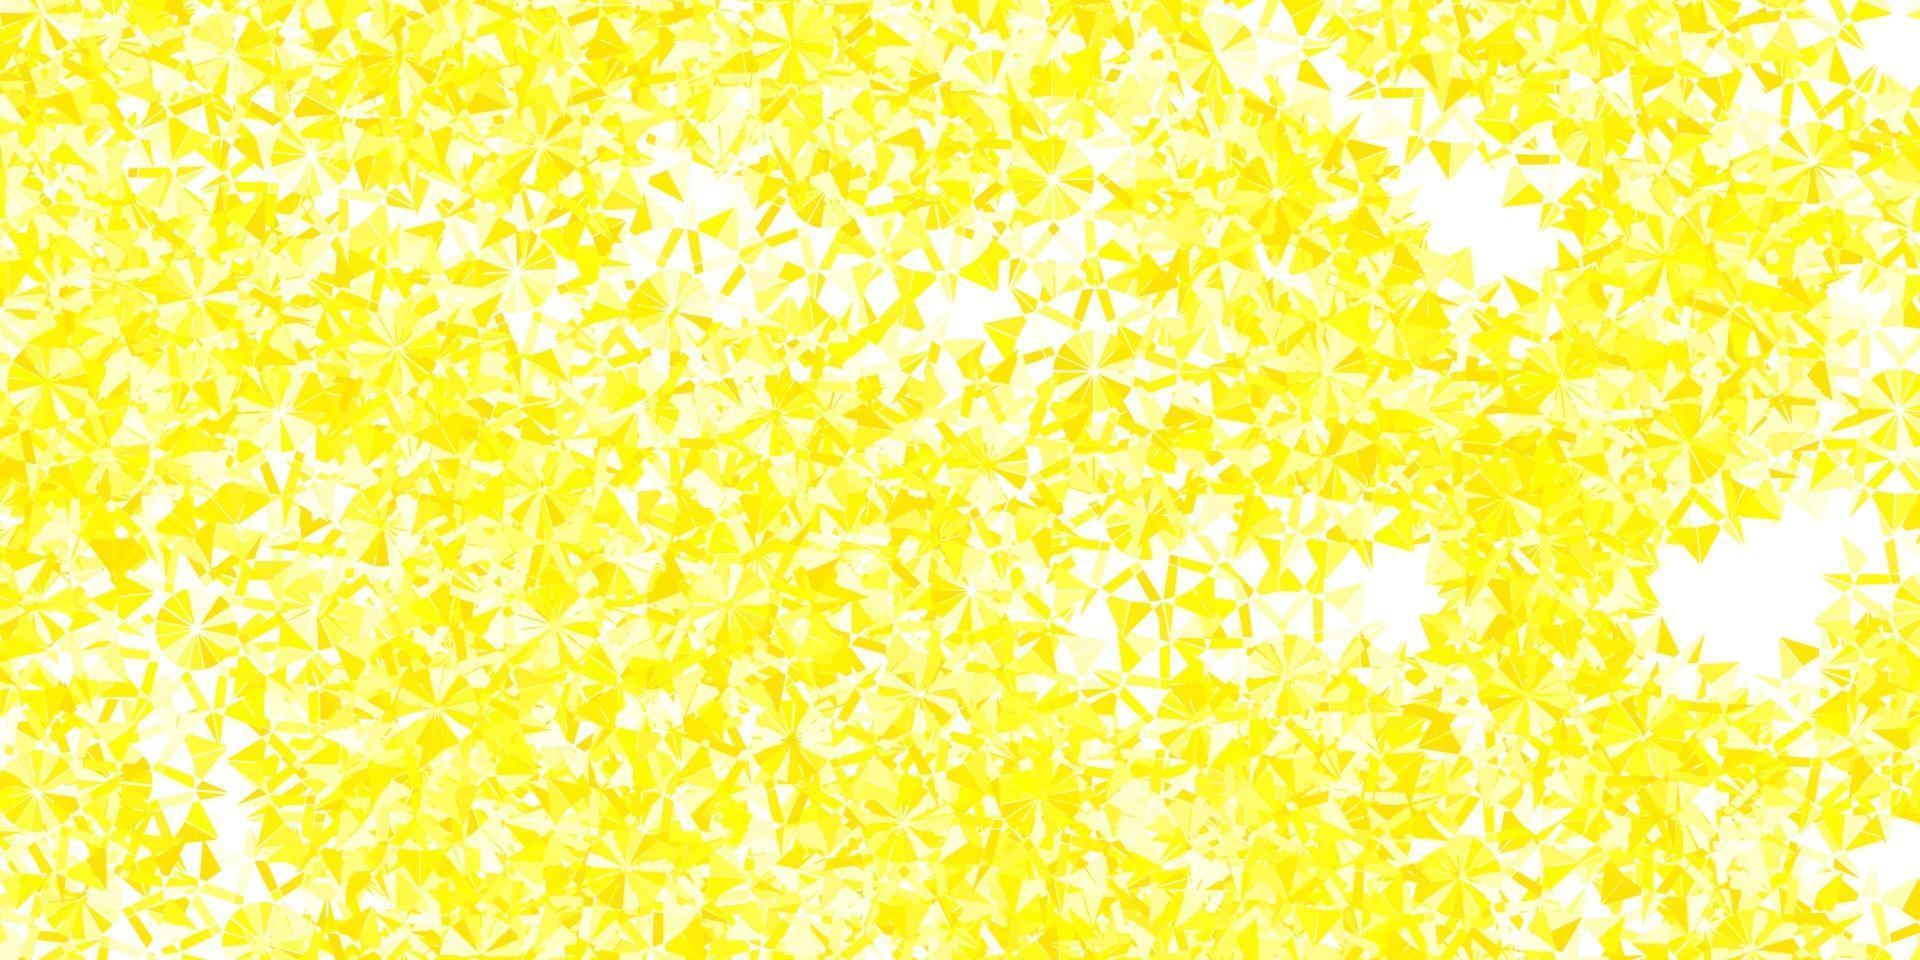 plantilla de vector amarillo claro con copos de nieve de hielo.